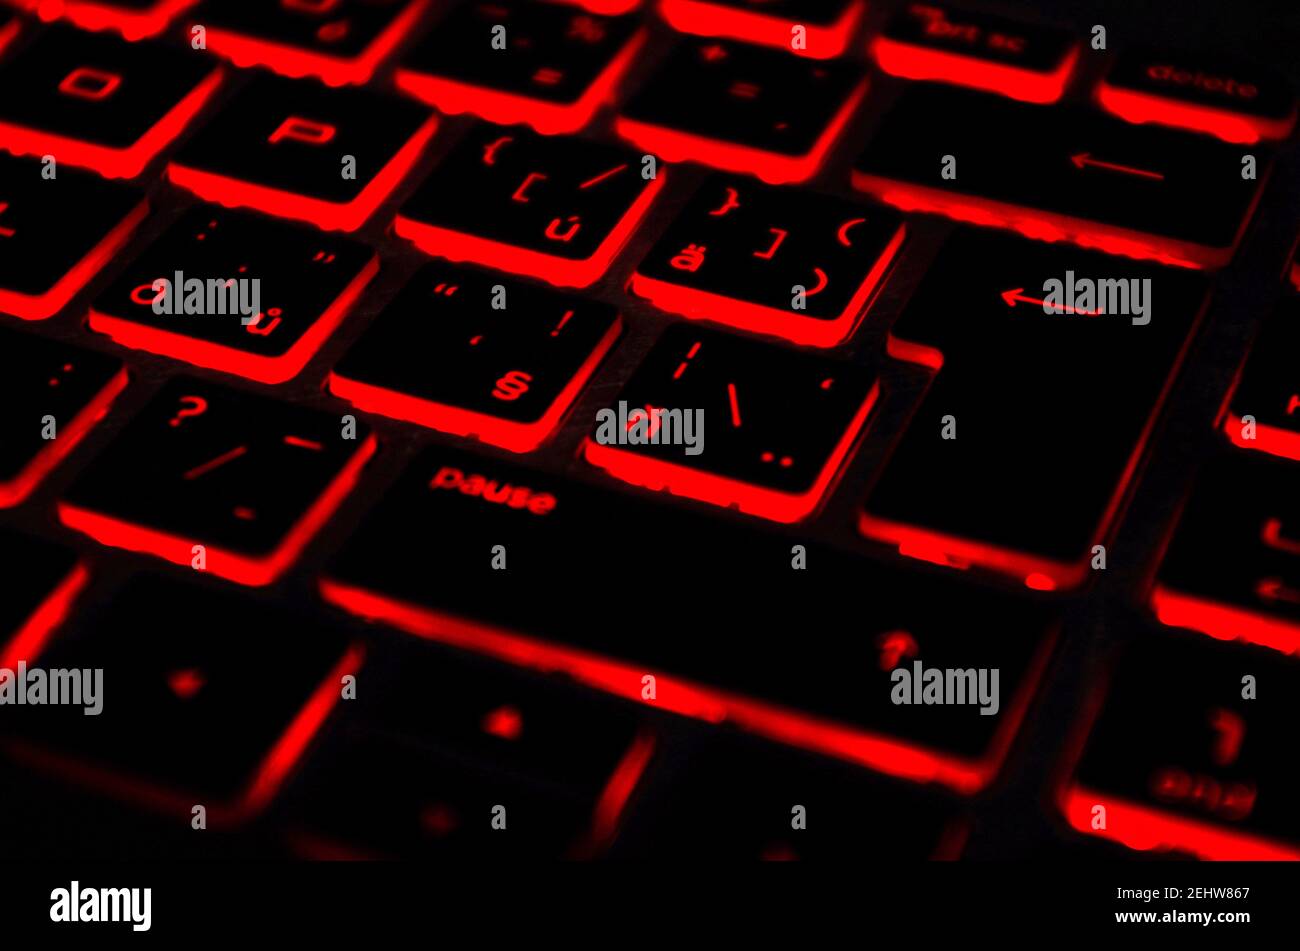 Rot beleuchtet beleuchtete Tastatur, auf Laptop oder Keyborad Computer von  Spielen im Dunkeln. Cyber Attack, Hacking und Internet Security Konzept  Stockfotografie - Alamy